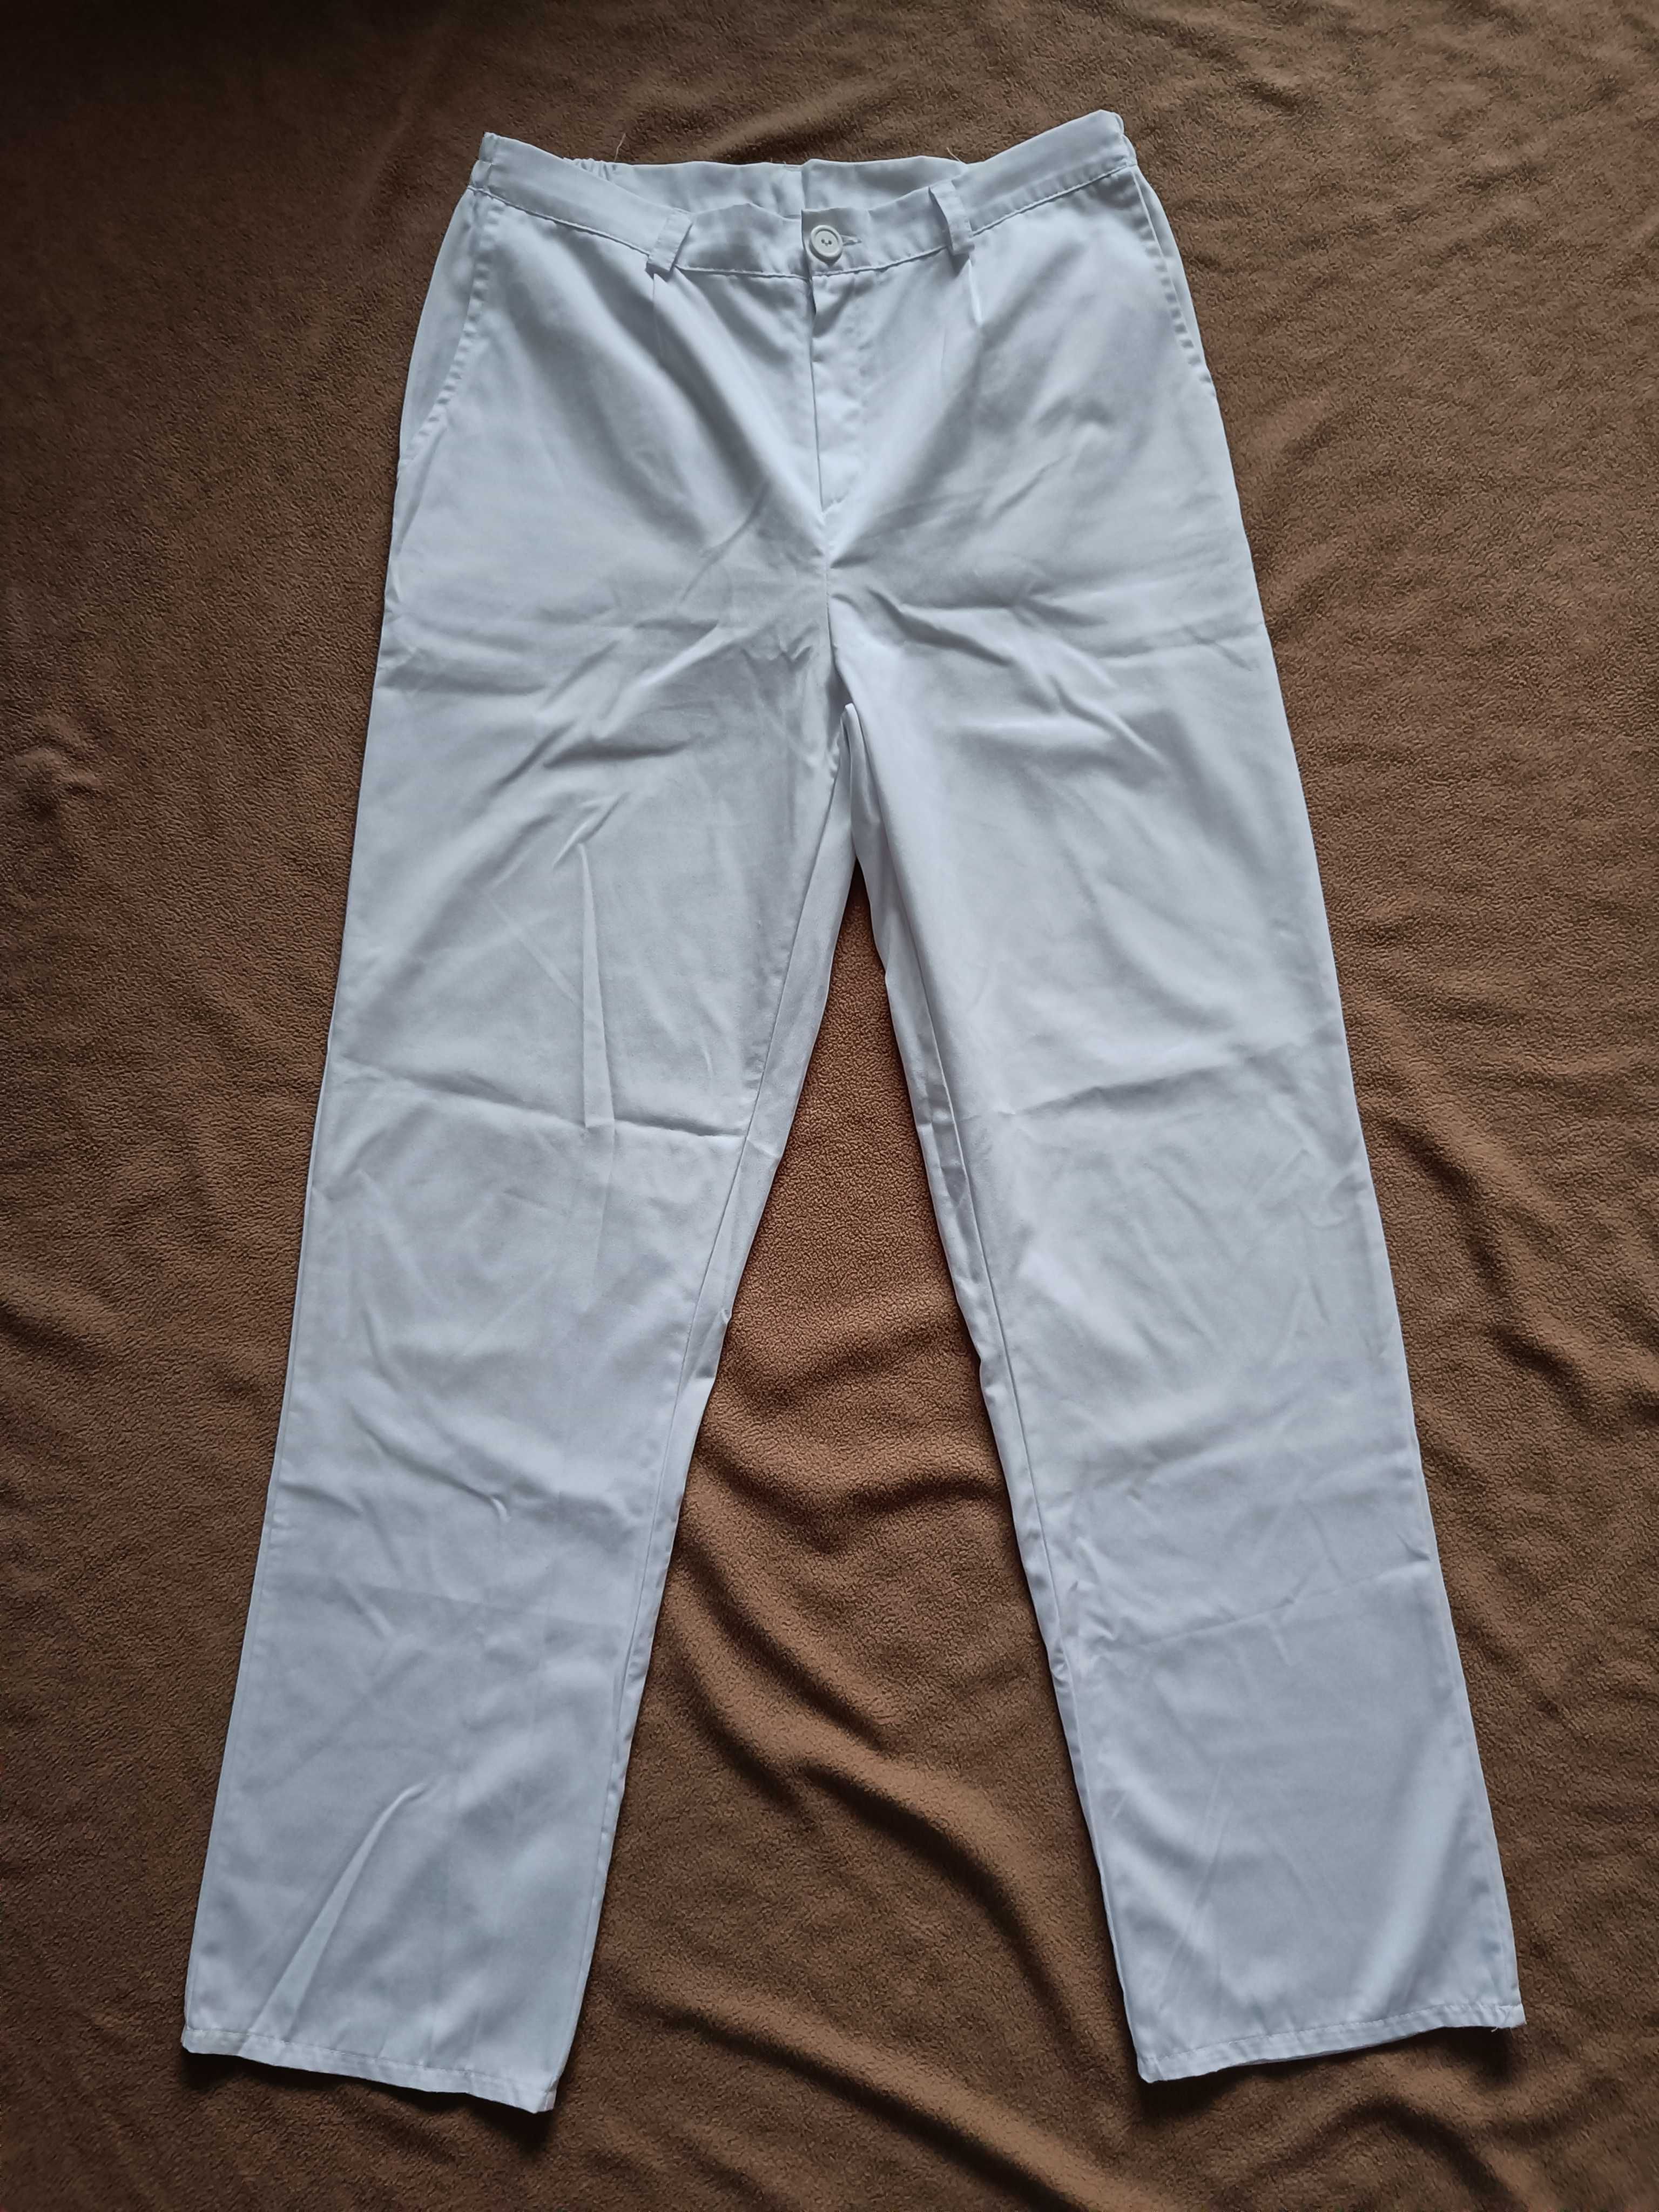 NOWE Białe spodnie męskie, medyczne rozmiar M  50  176cm